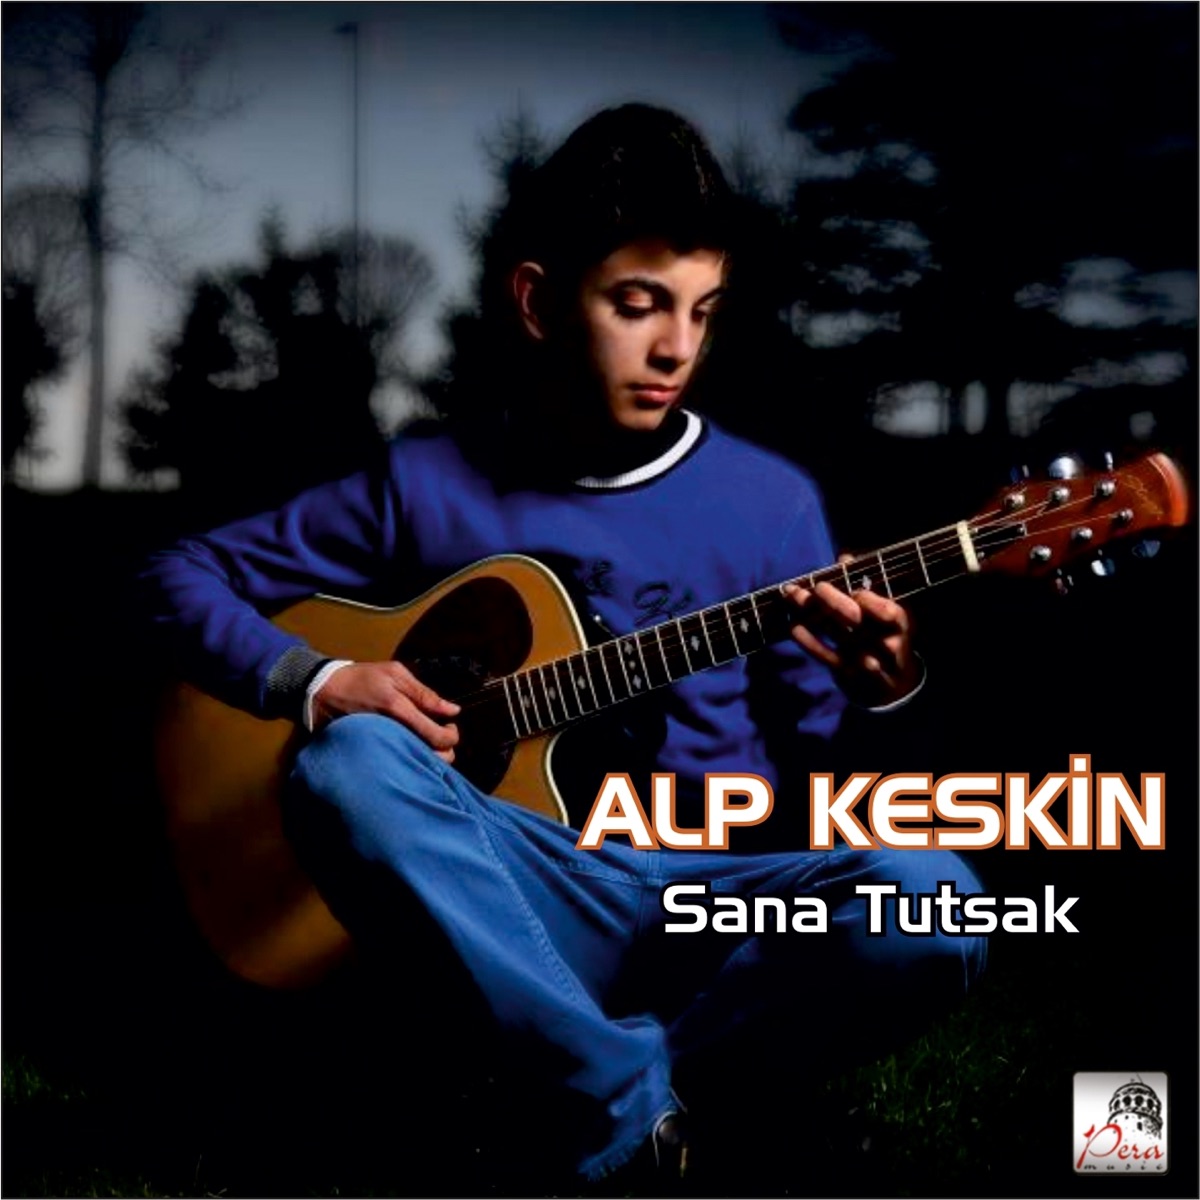 Öptüm Nefesinden (feat. Barış Baktaş) - Single - Album by Alp Keskin -  Apple Music